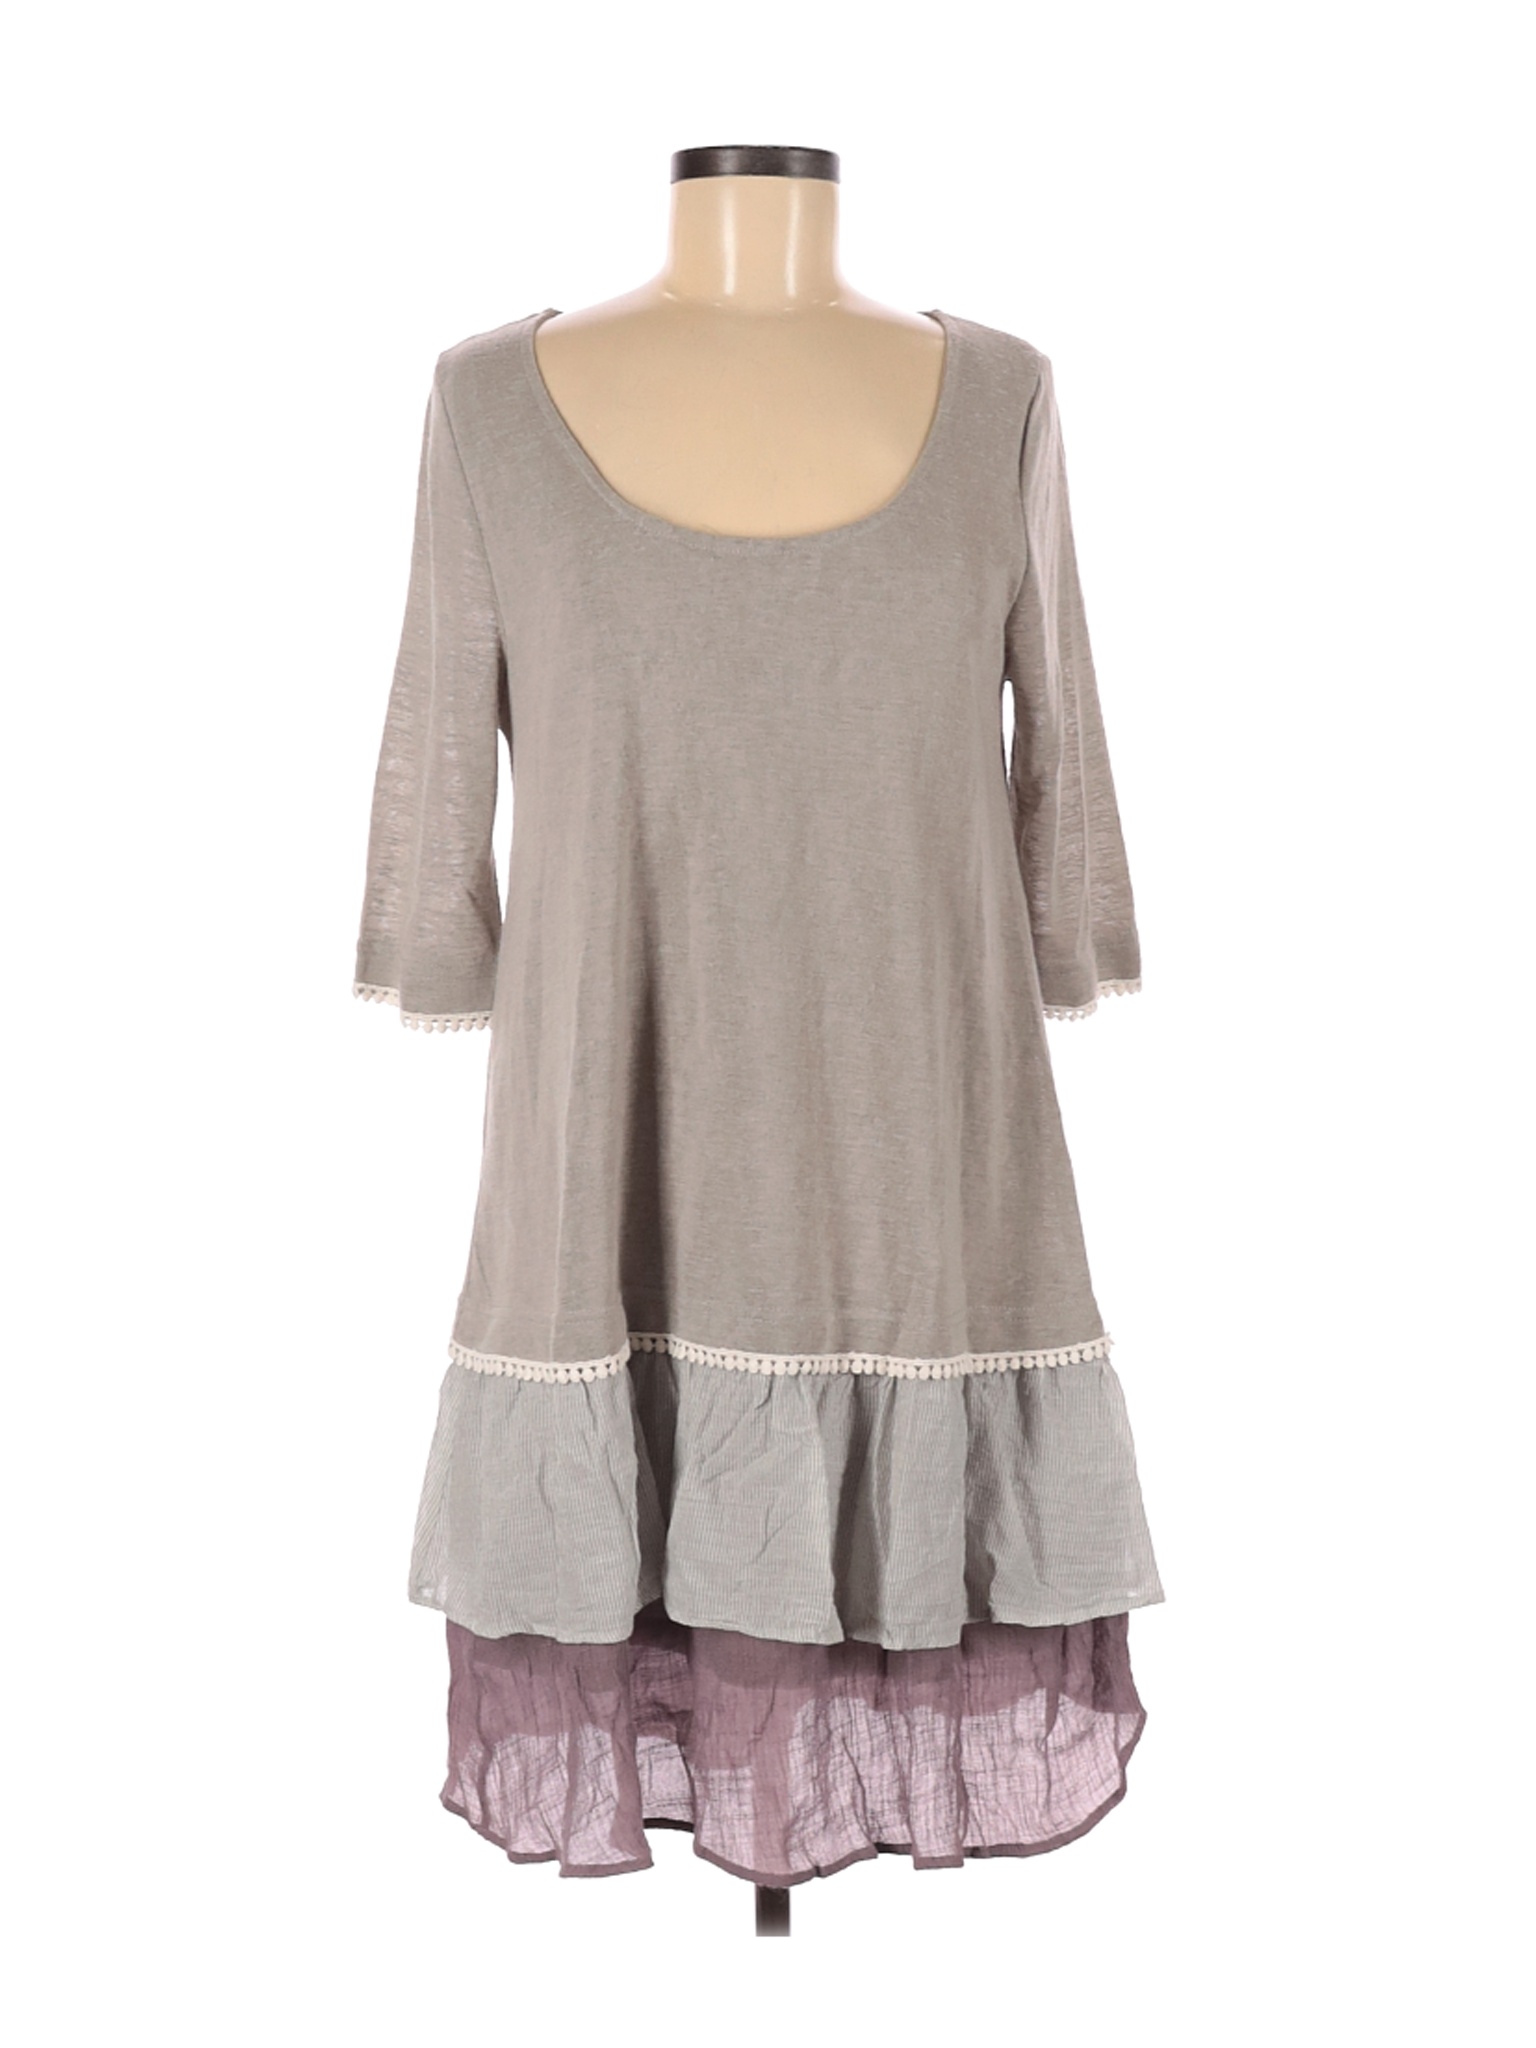 Easel Women Gray Casual Dress M | eBay